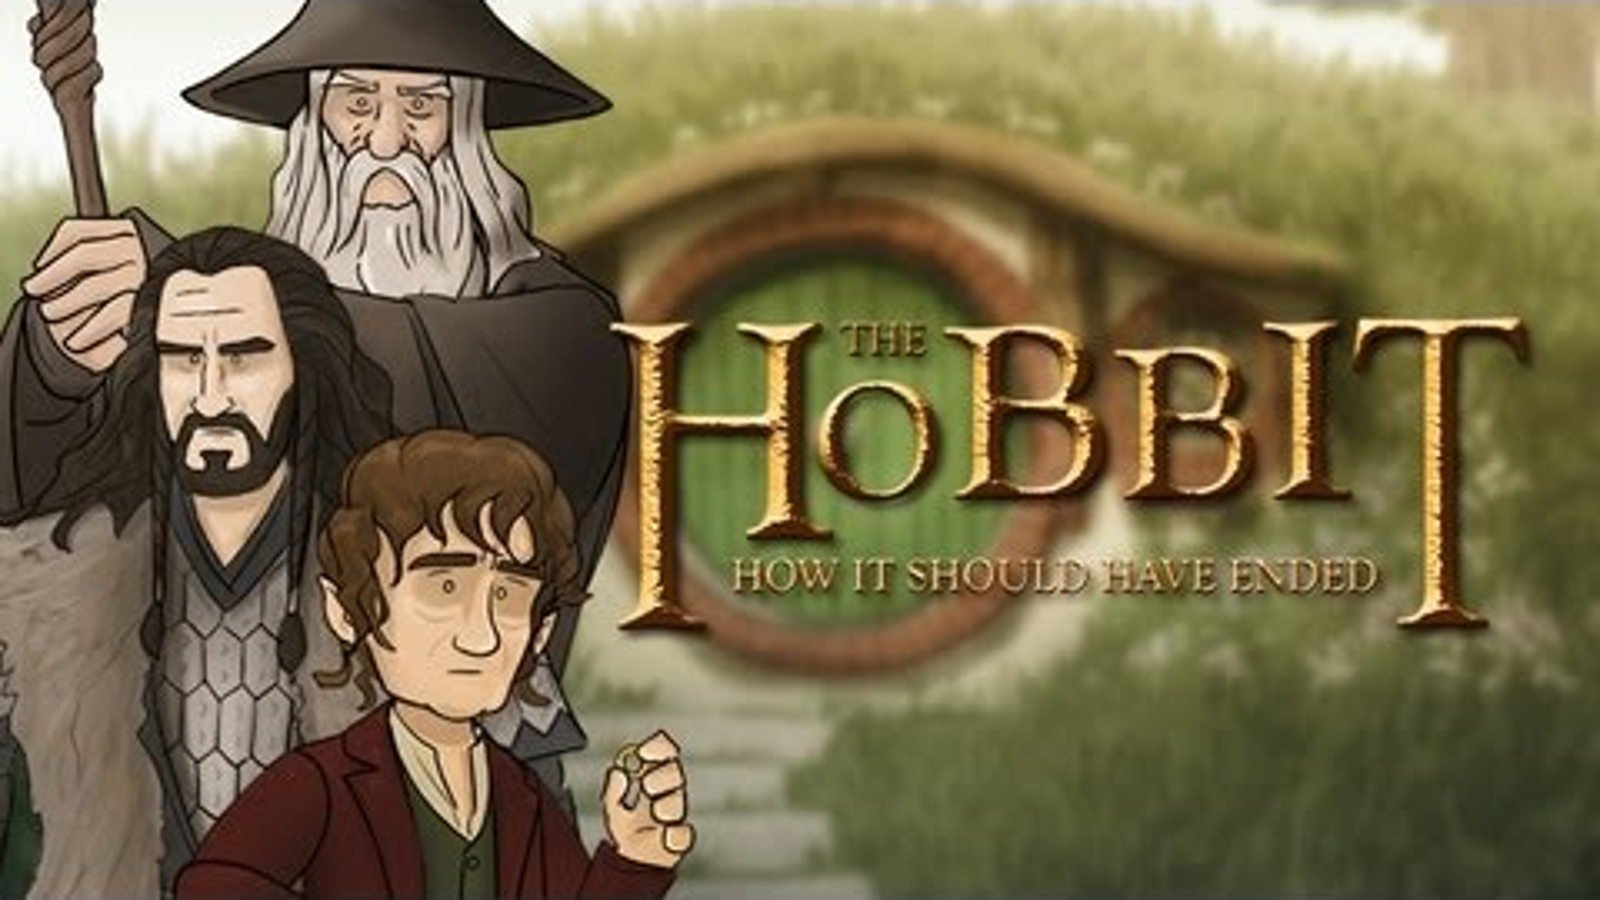 Hobbit, ya da Gittik ve Döndük by J.R.R. Tolkien